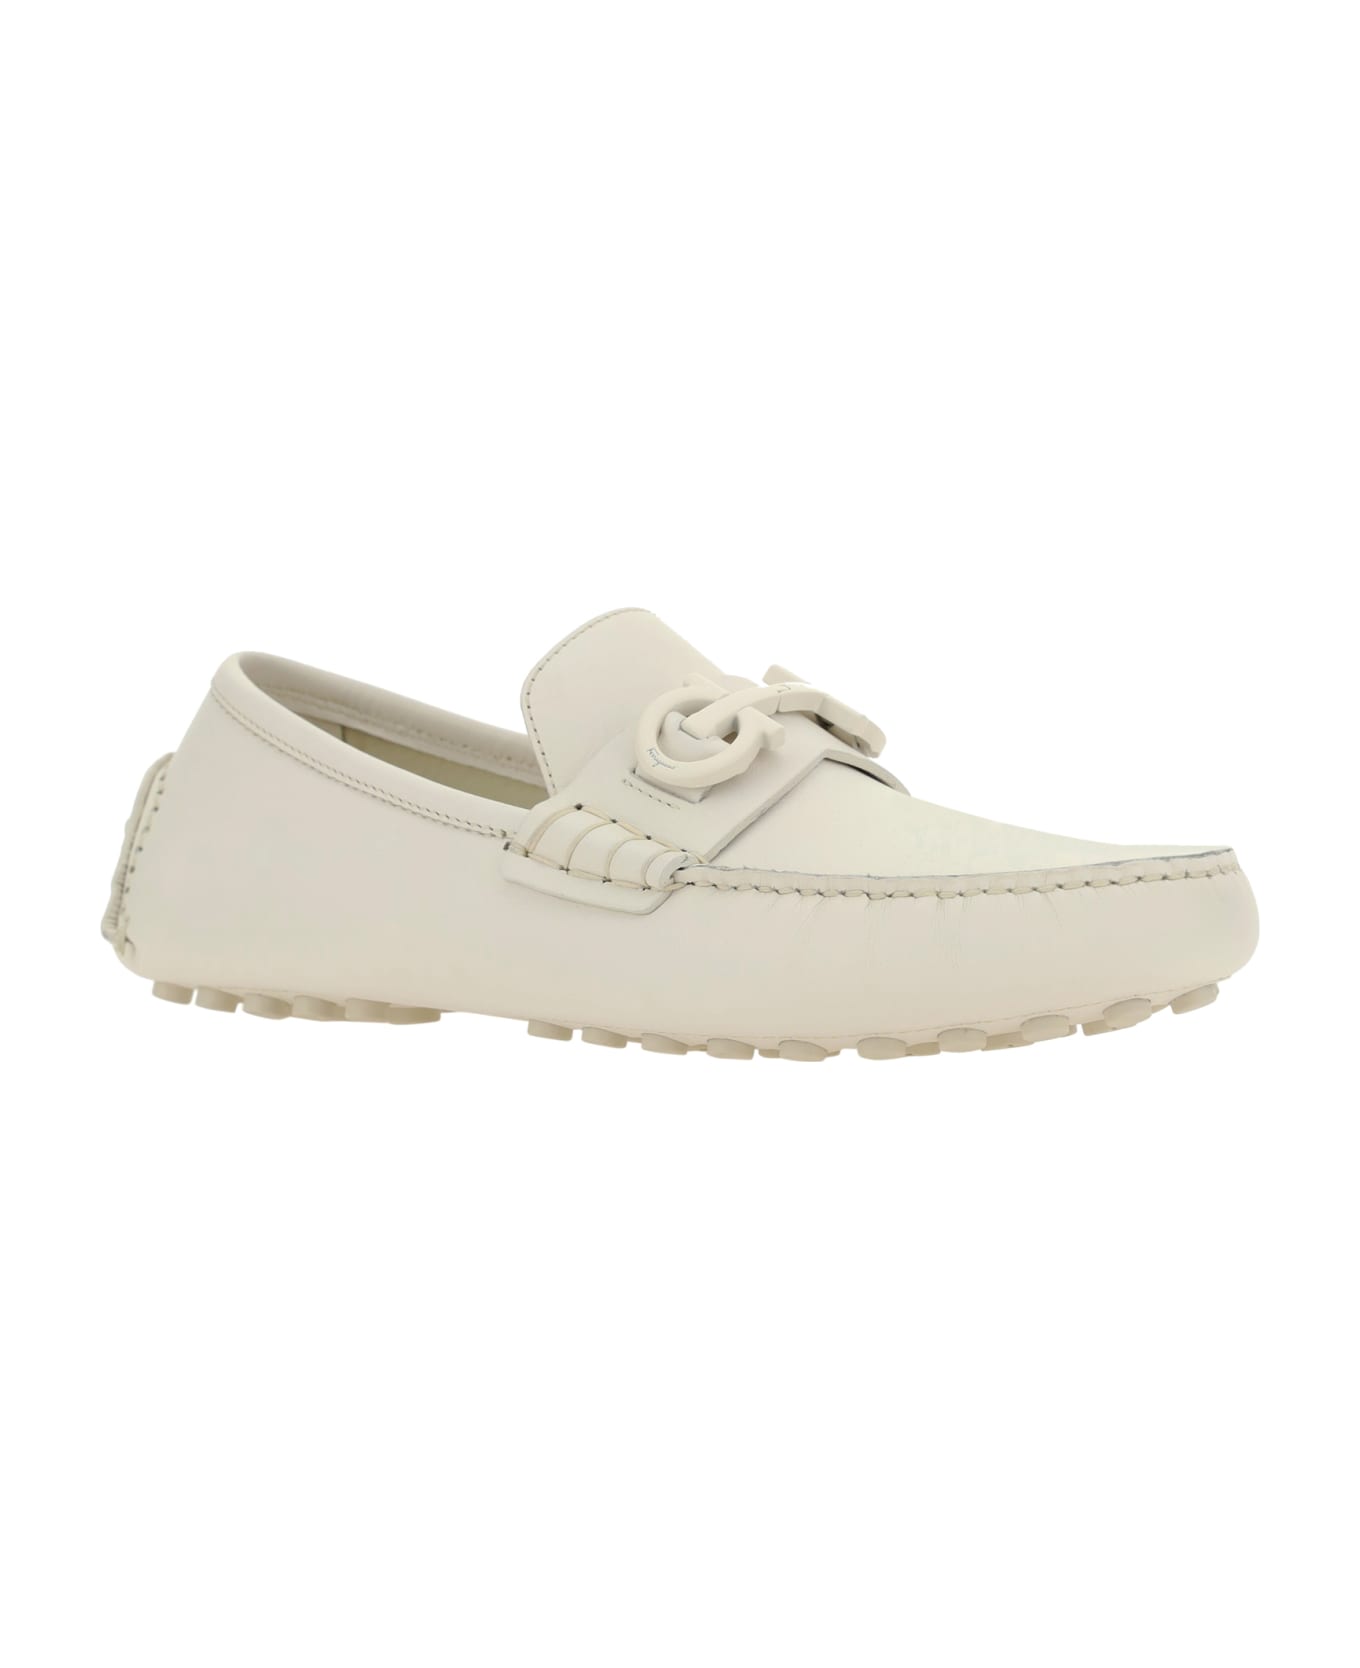 Ferragamo White Leather Loafers - White